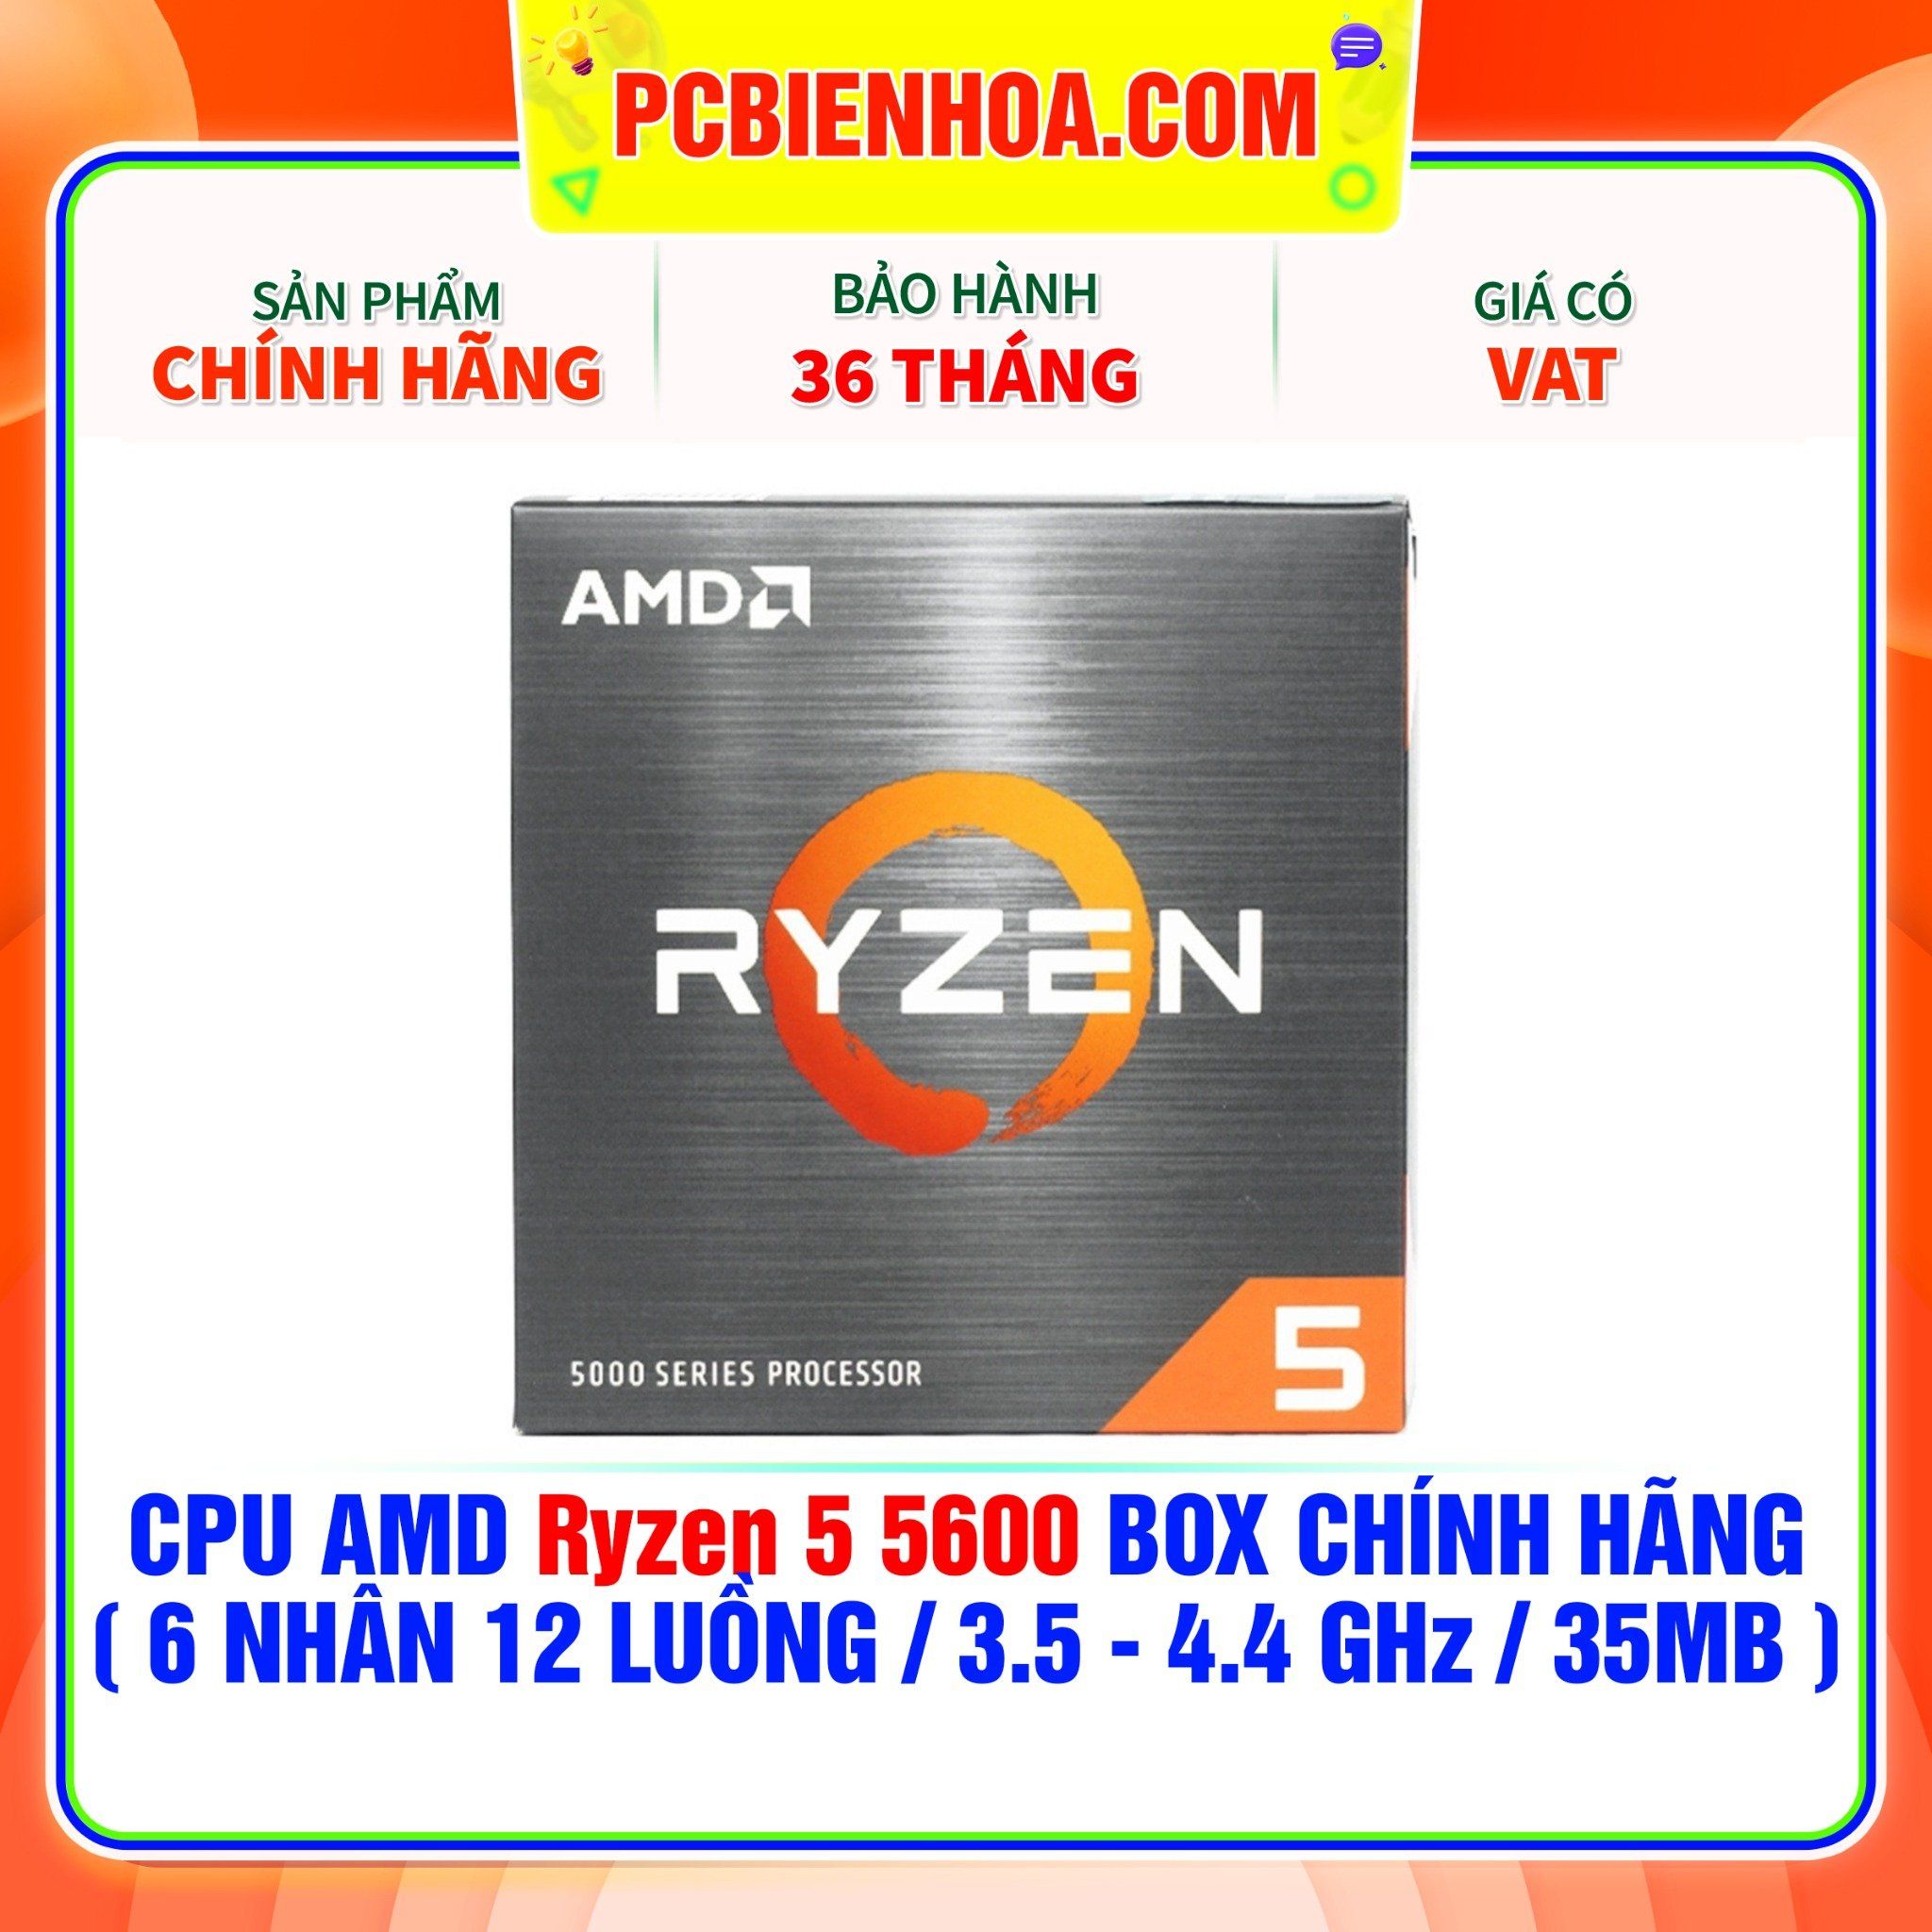  CPU AMD Ryzen 5 5600 BOX CHÍNH HÃNG ( 6 NHÂN 12 LUỒNG / 3.5 - 4.4 GHz / 35MB ) 